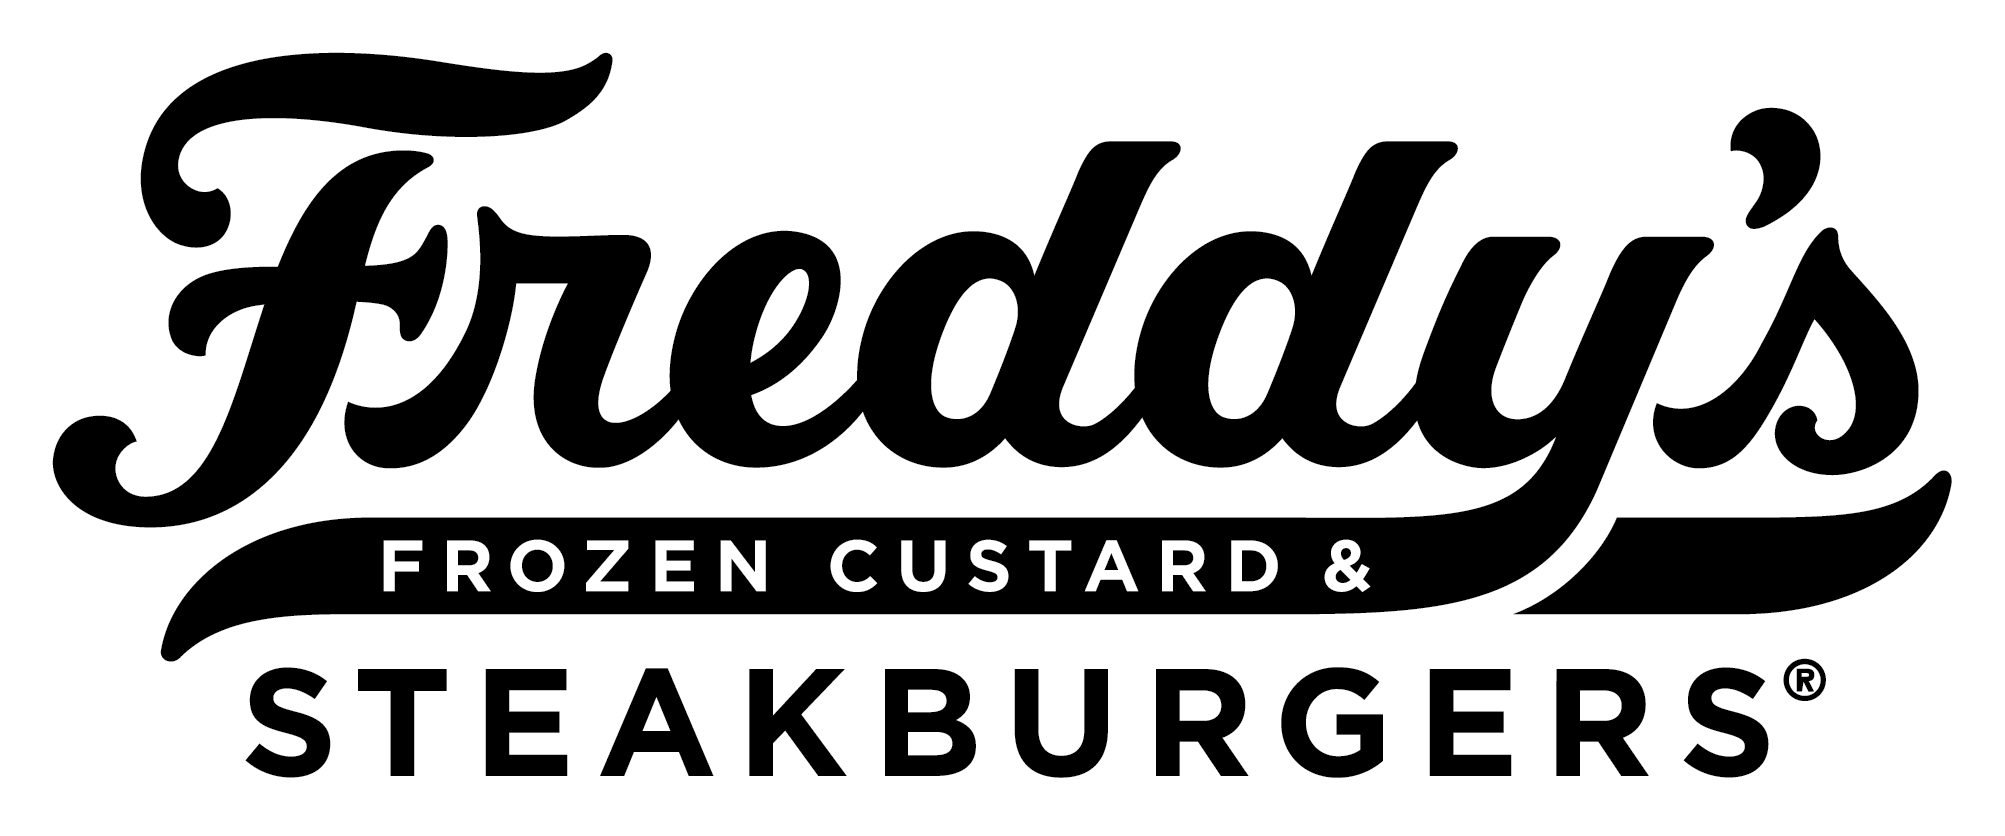 freddys logo